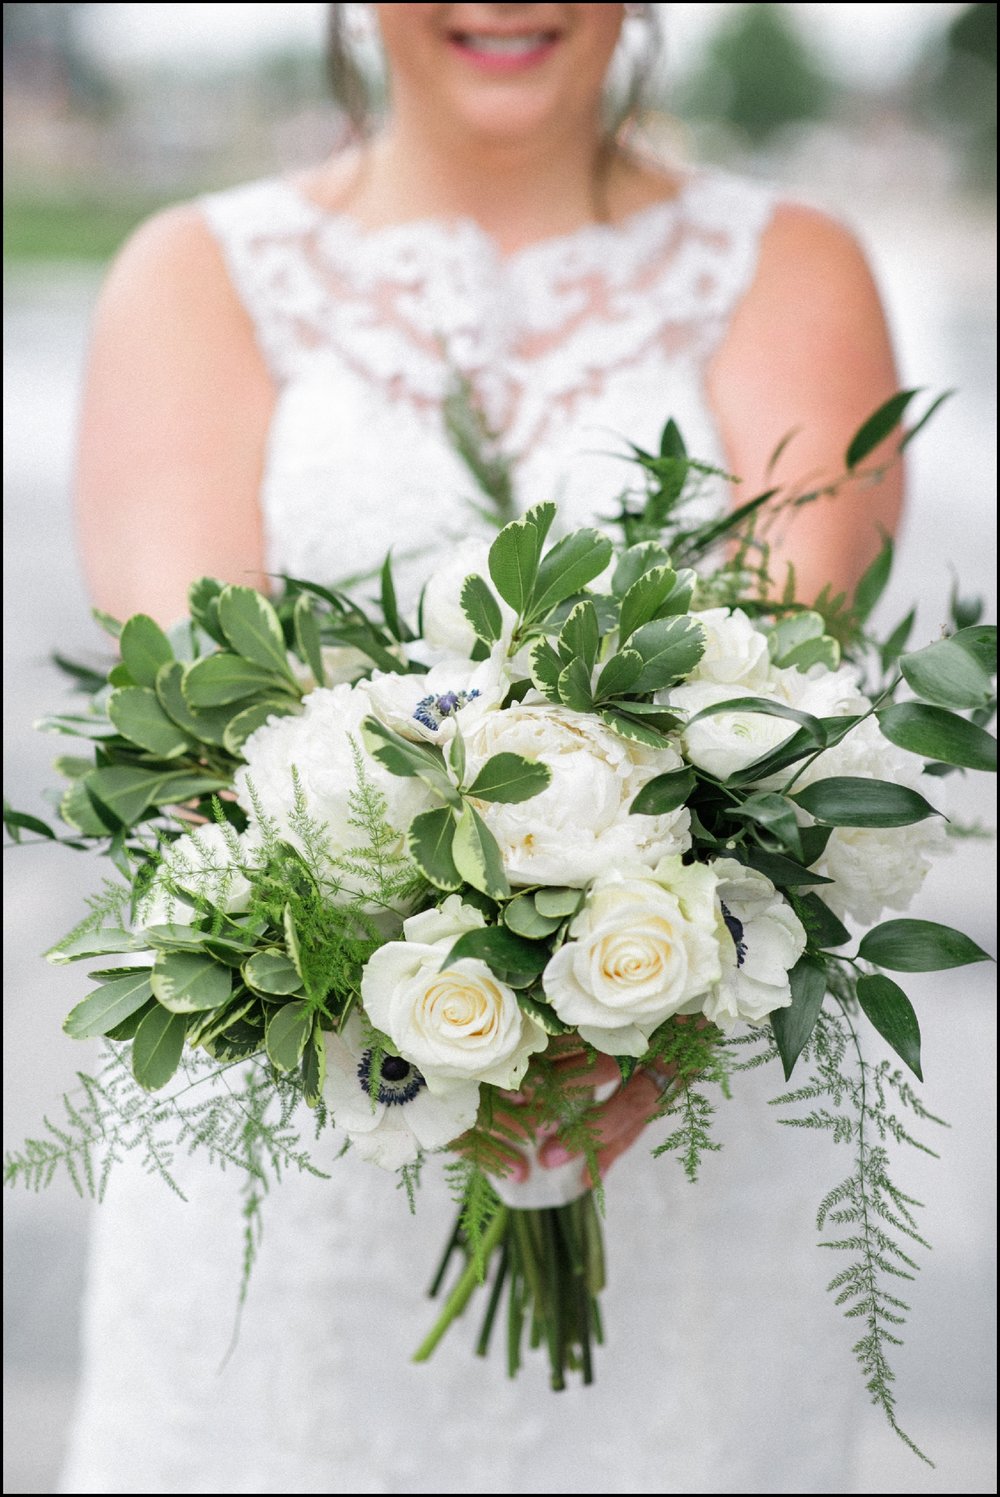  Bride holding her wedding bouquet 